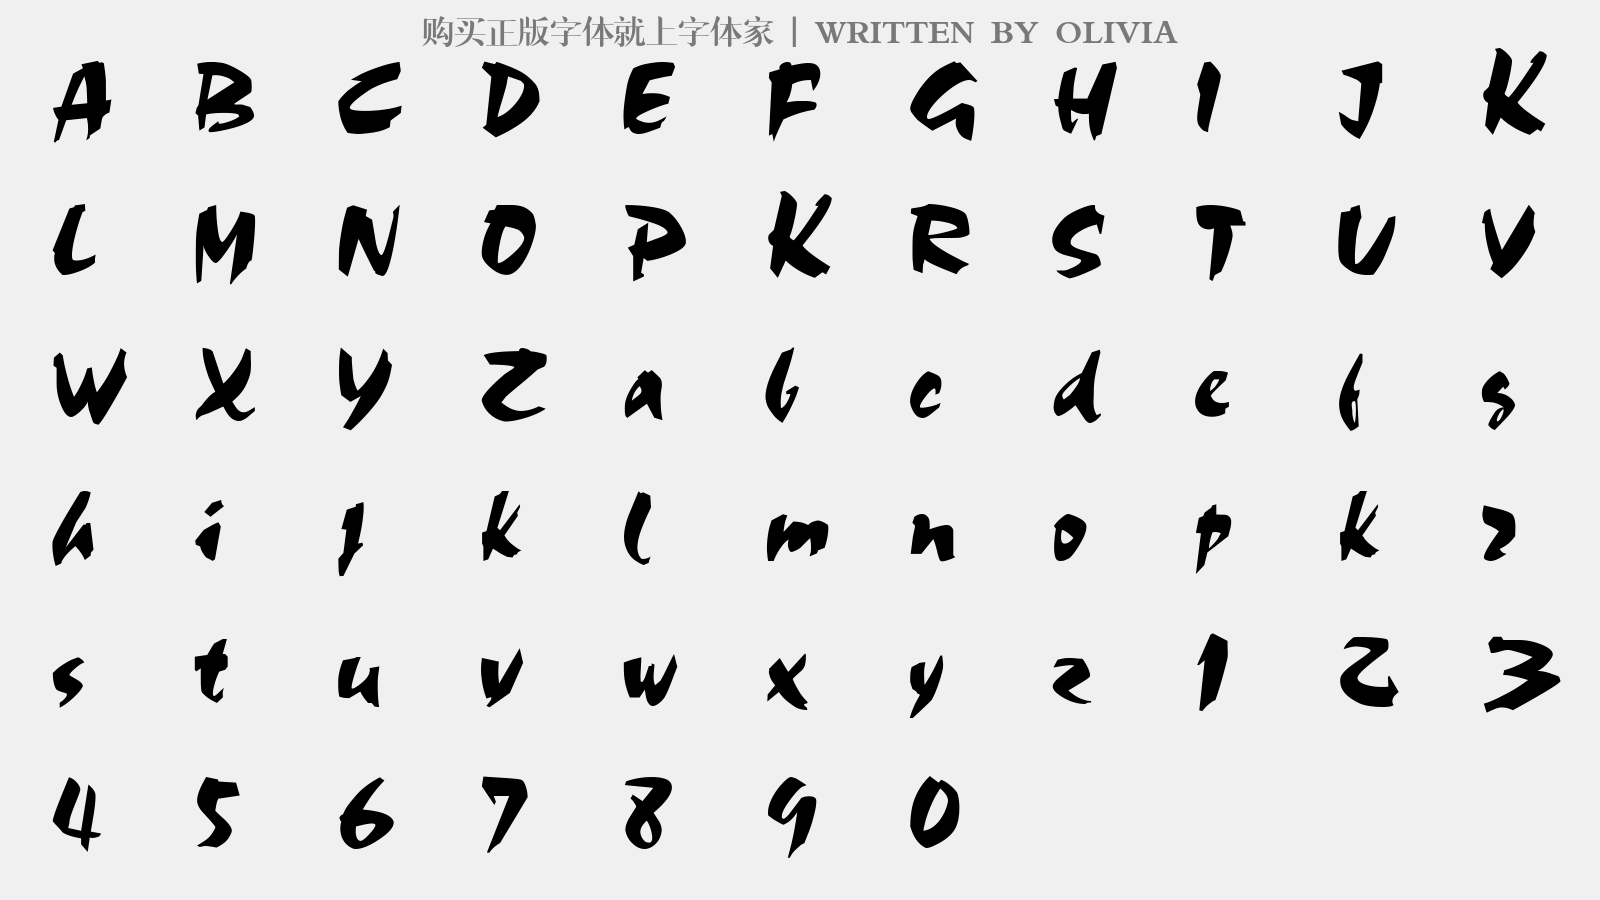 OLIVIA - 大写字母/小写字母/数字